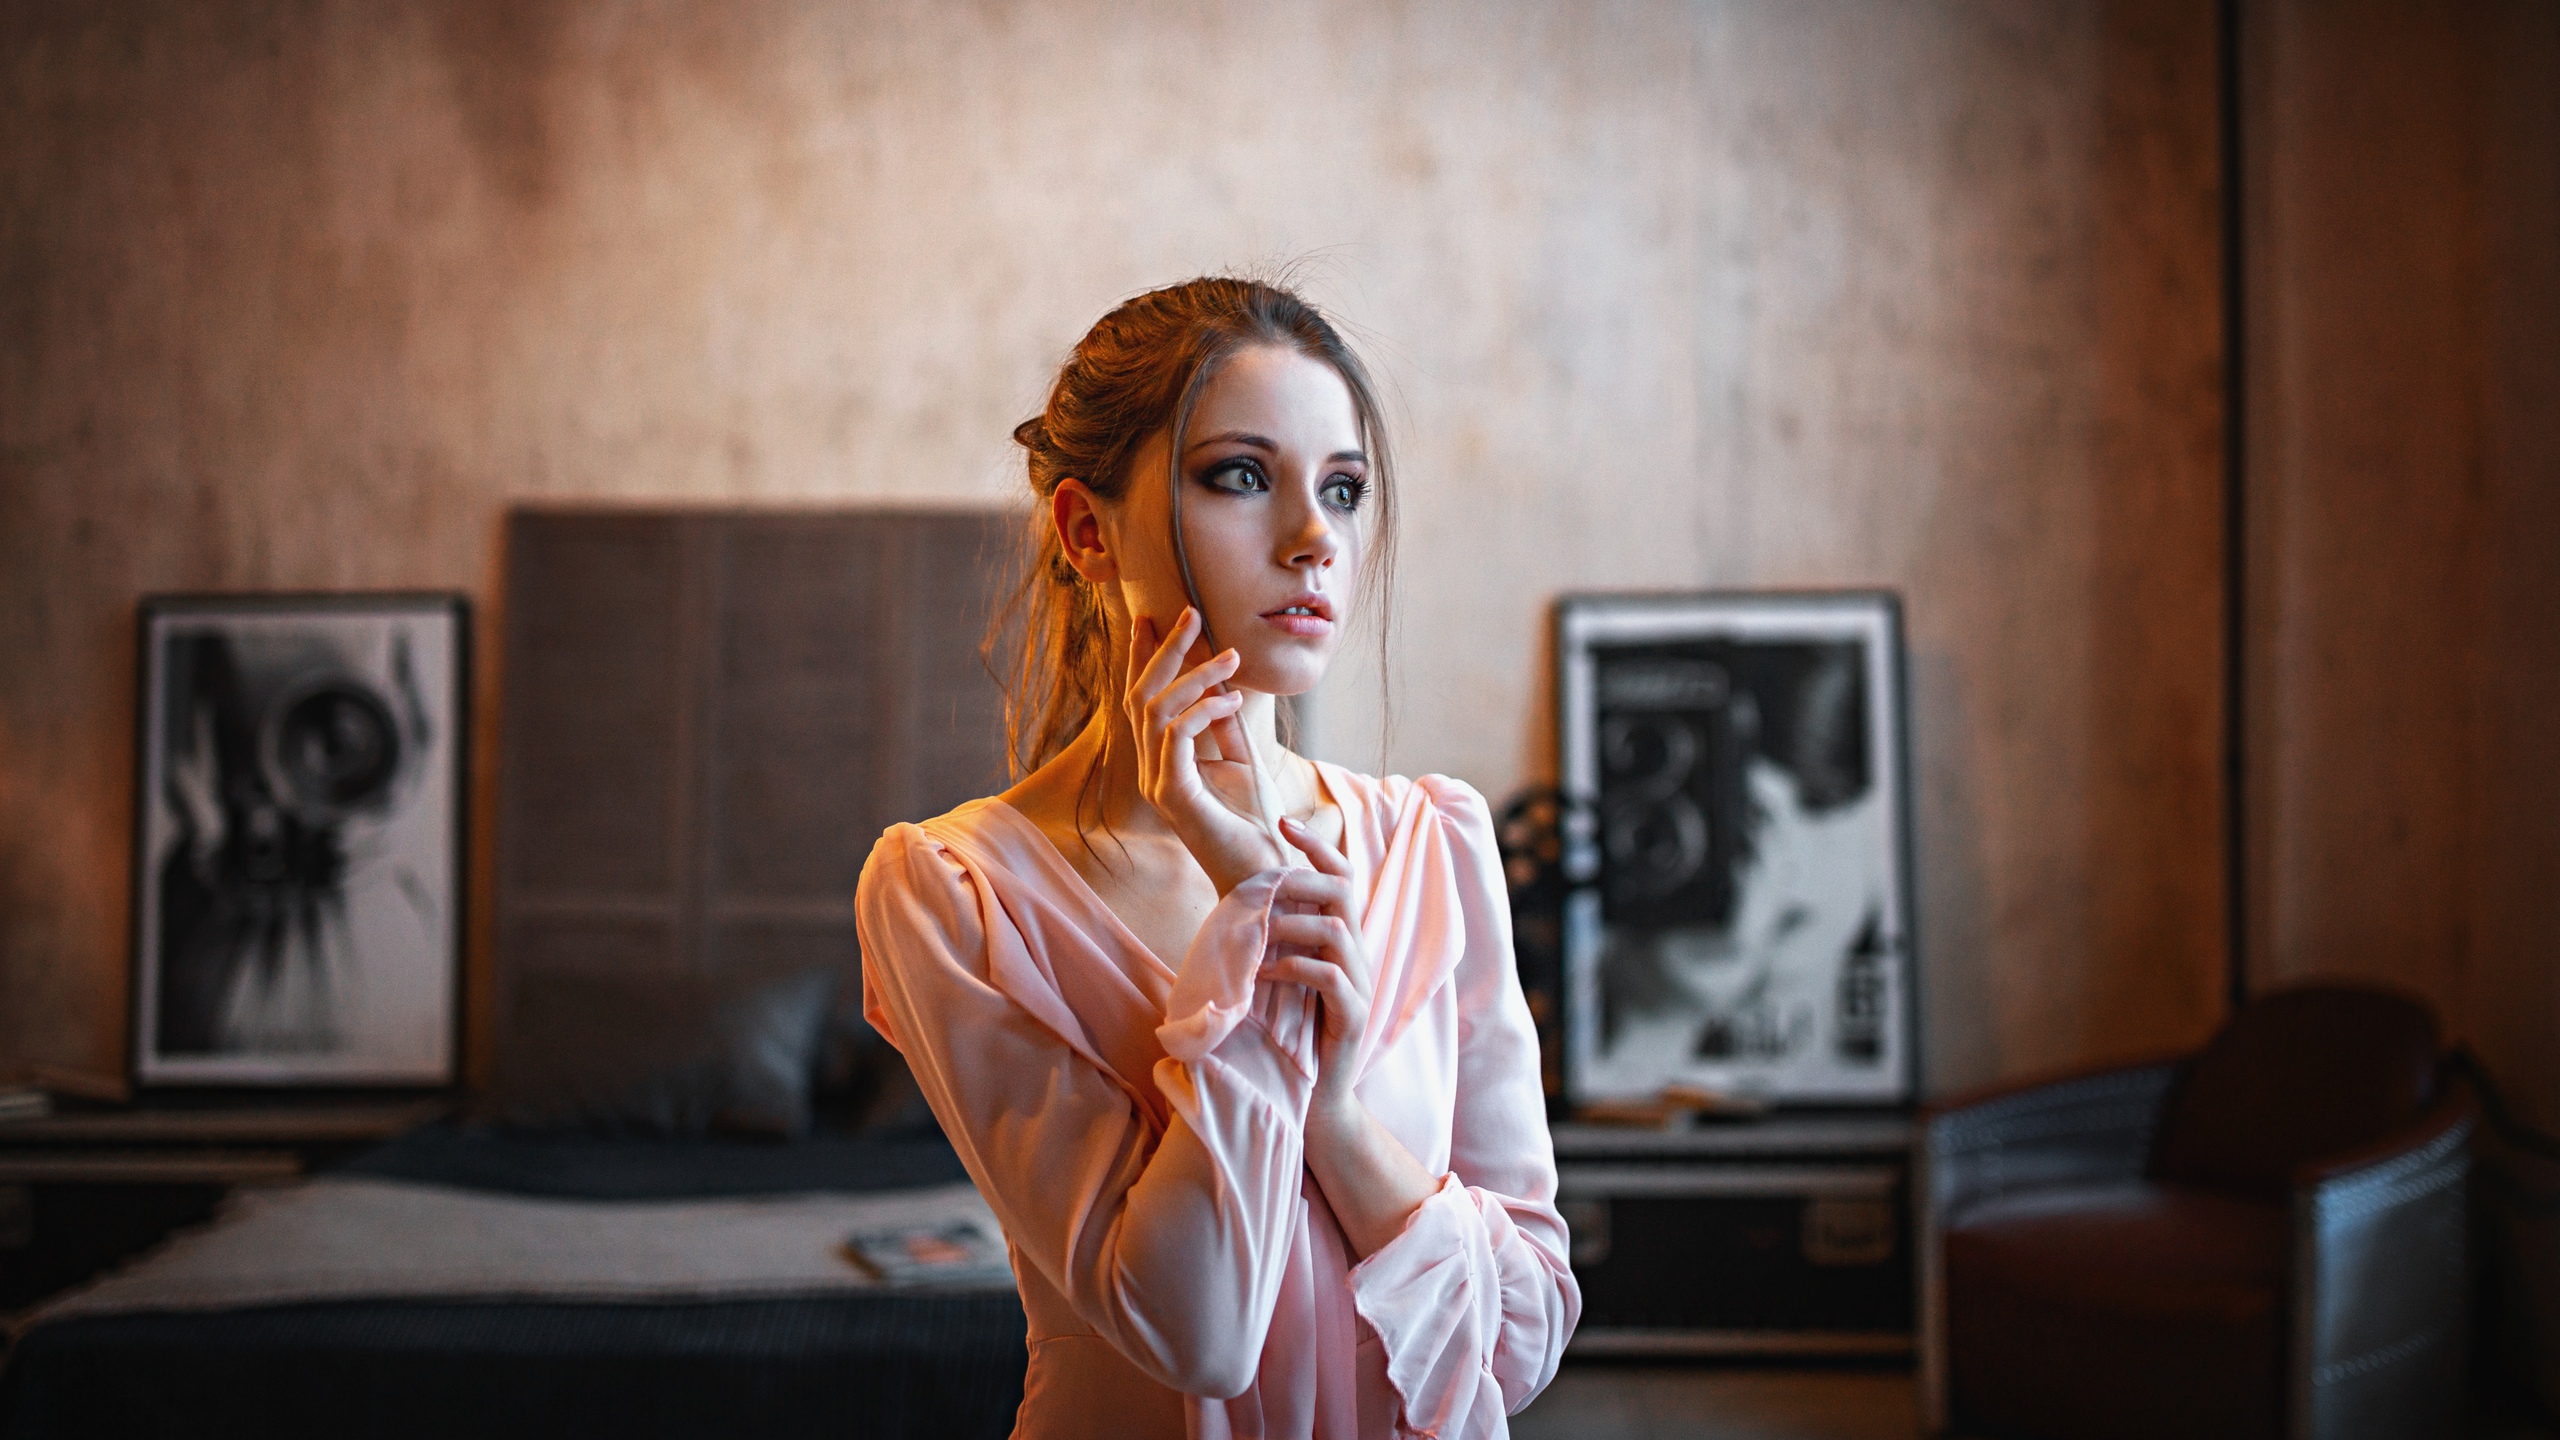 Alexey Kishechkin Women Ksenia Kokoreva Brunette Makeup Pink Clothing Eyeshadow Indoors Looking Away 2560x1440